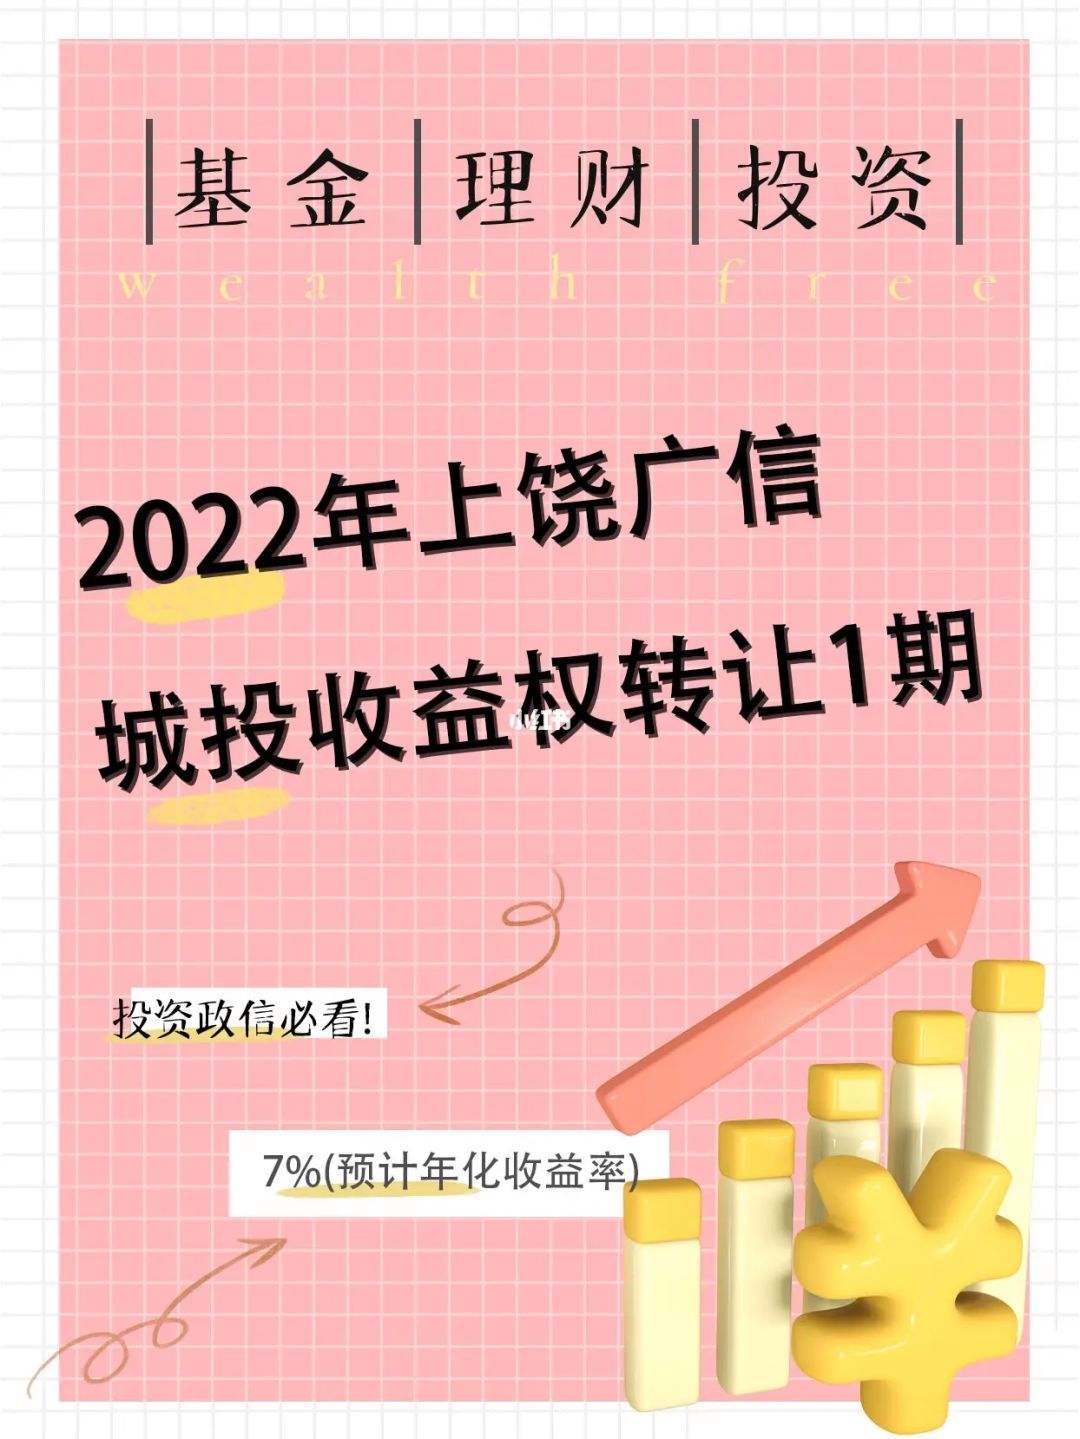 山东2022潍坊高新城投债权资产定融(潍坊滨海国投2021债权转让计划)